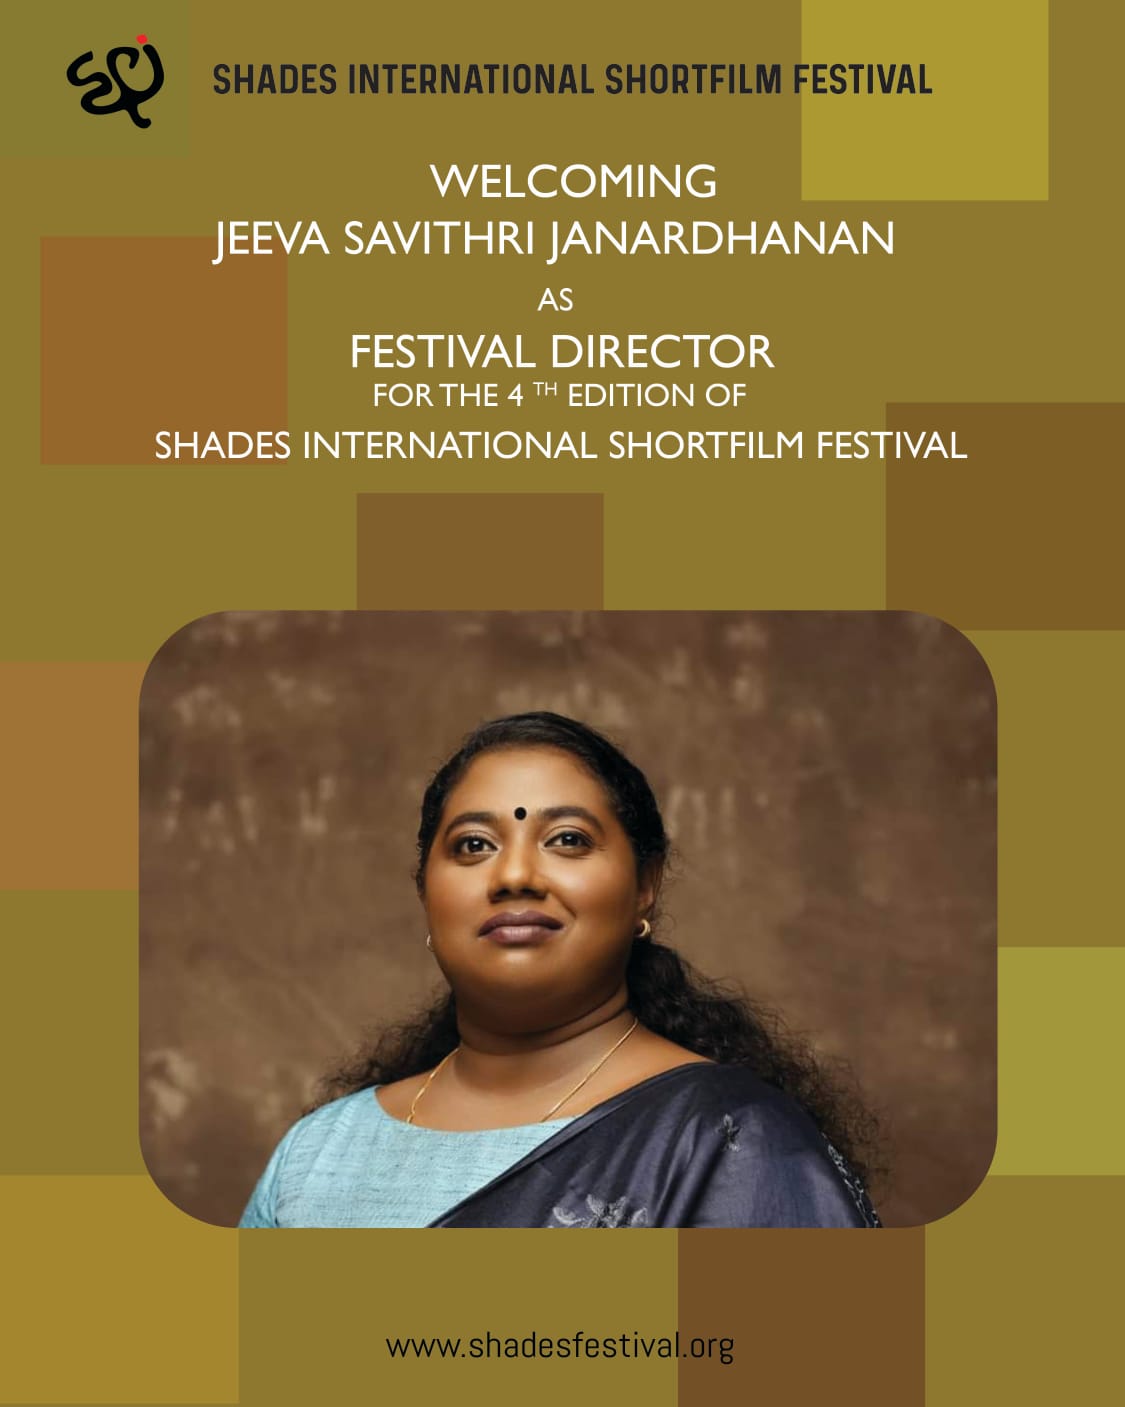 Jeeva Savithri Janardhanan